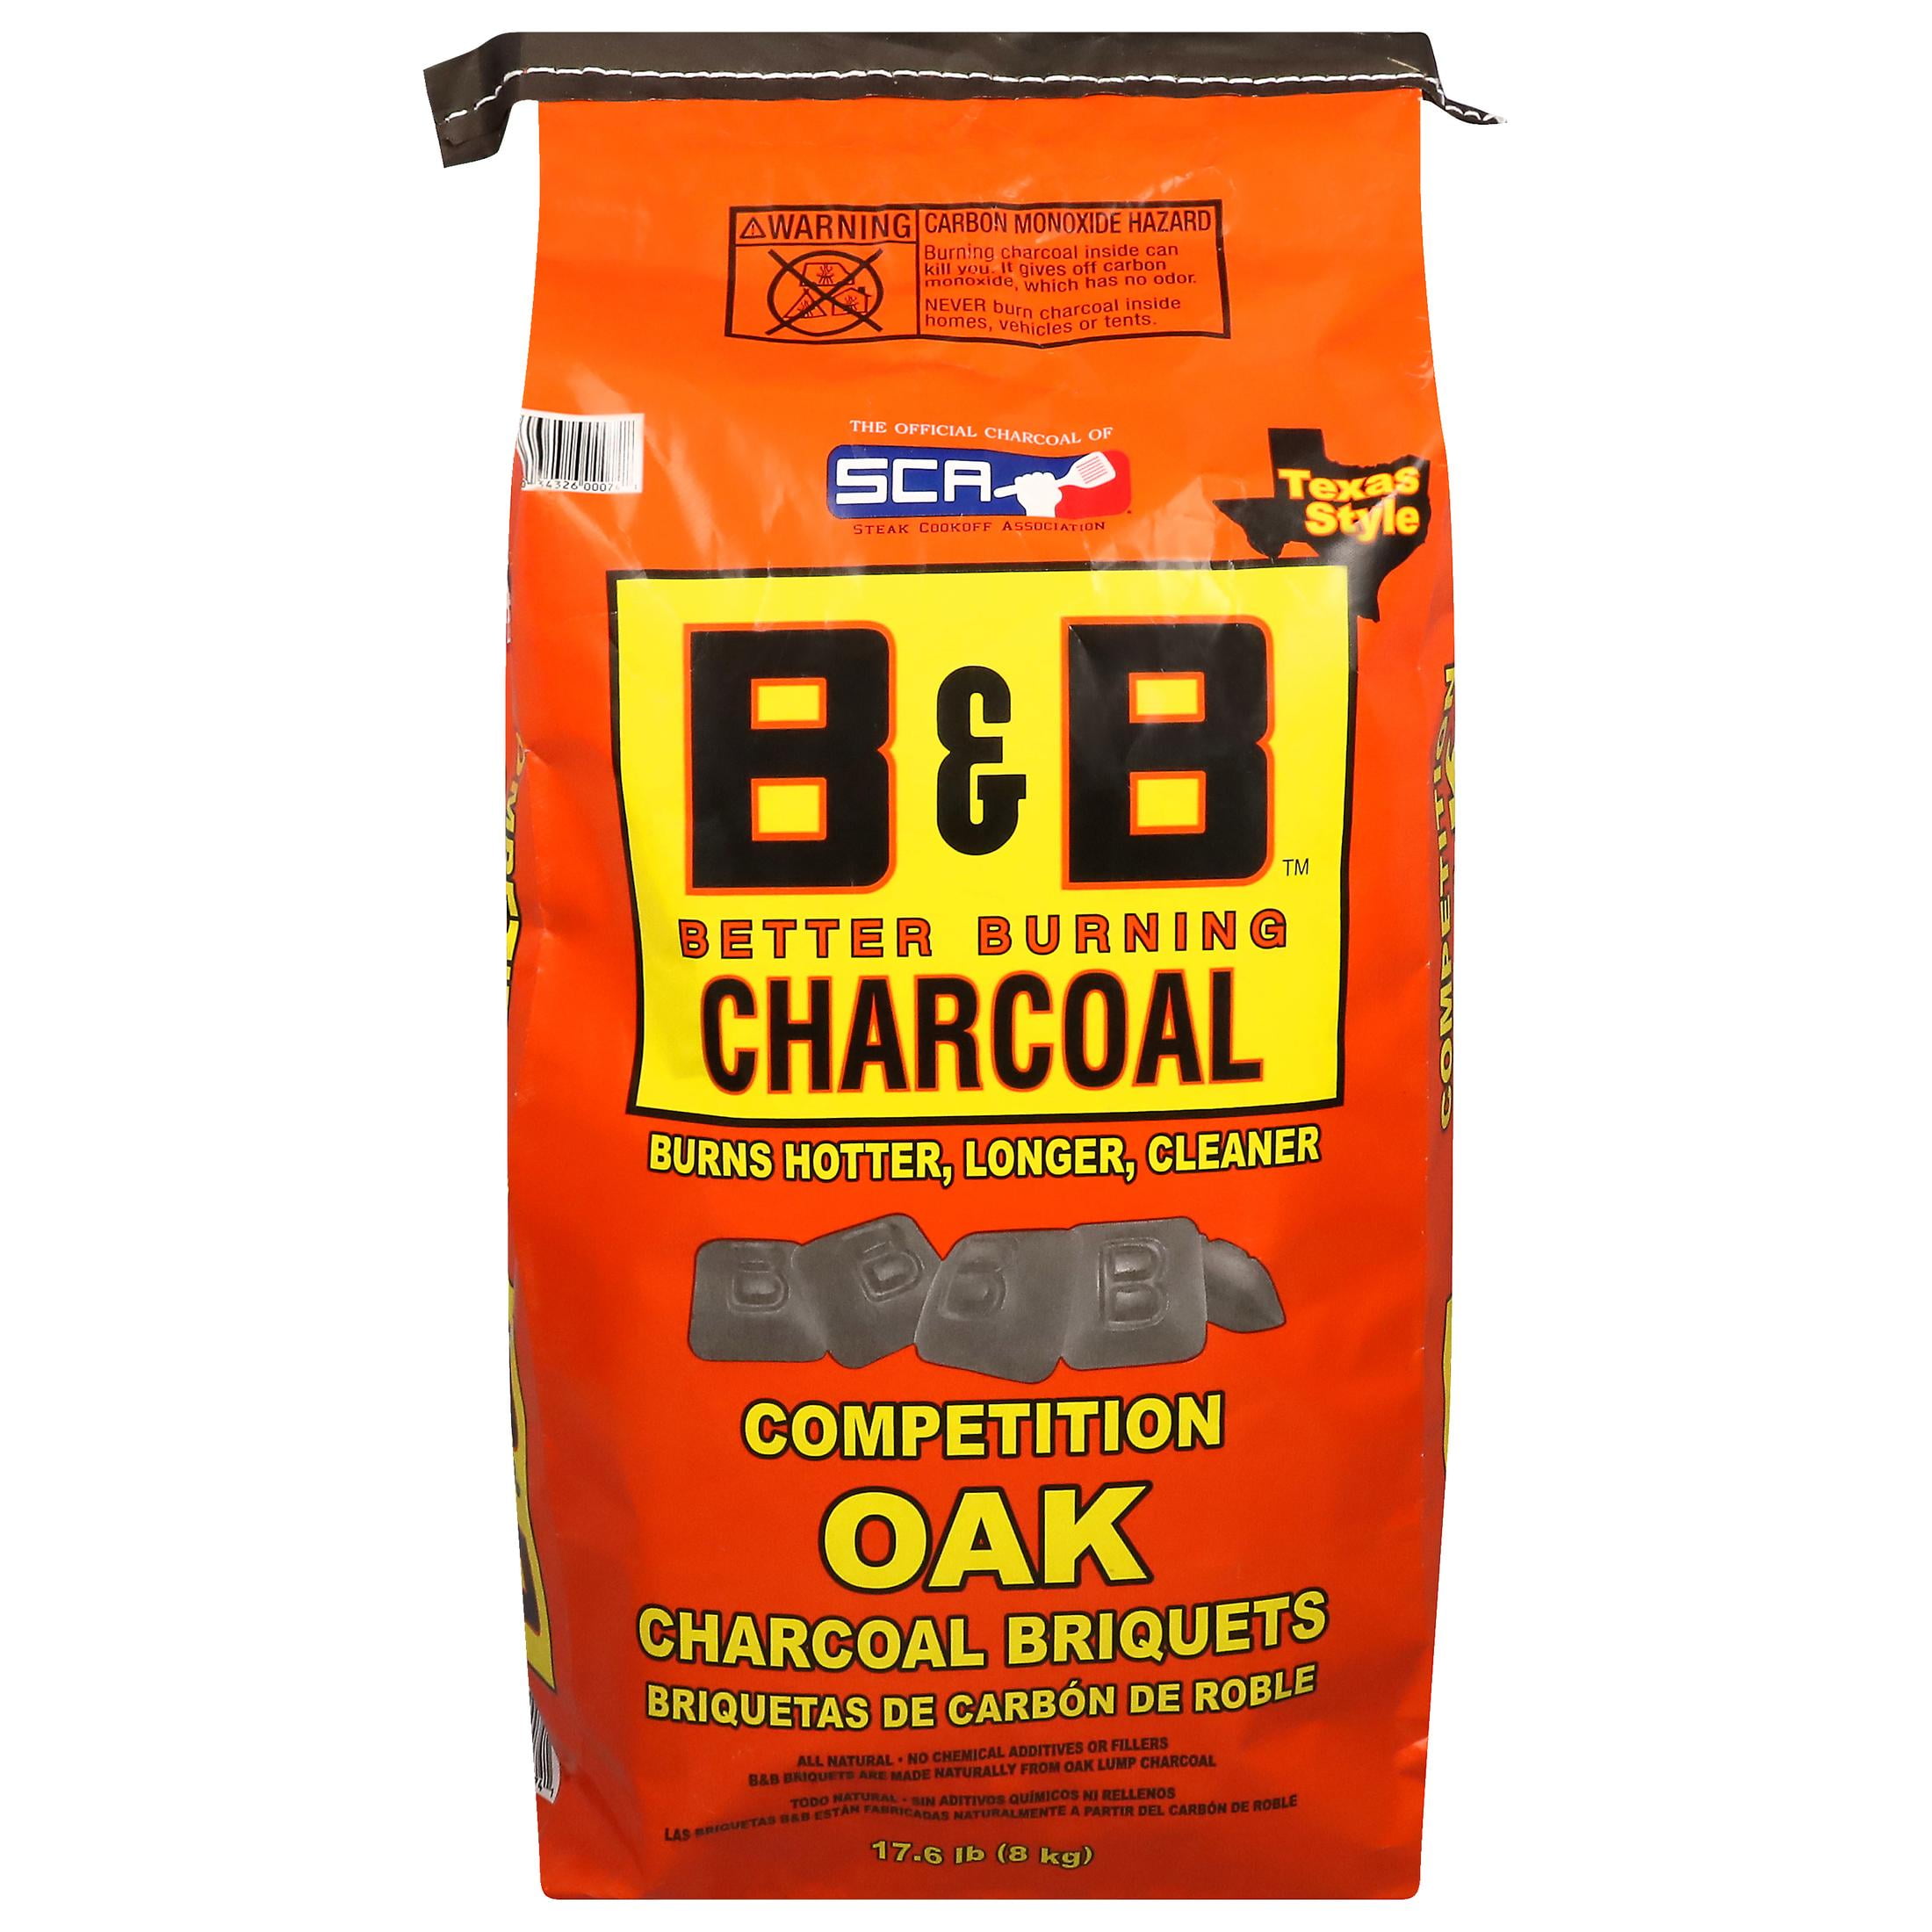 B&B Charcoal 17.6 lb Oak Charcoal Briquets $9.97